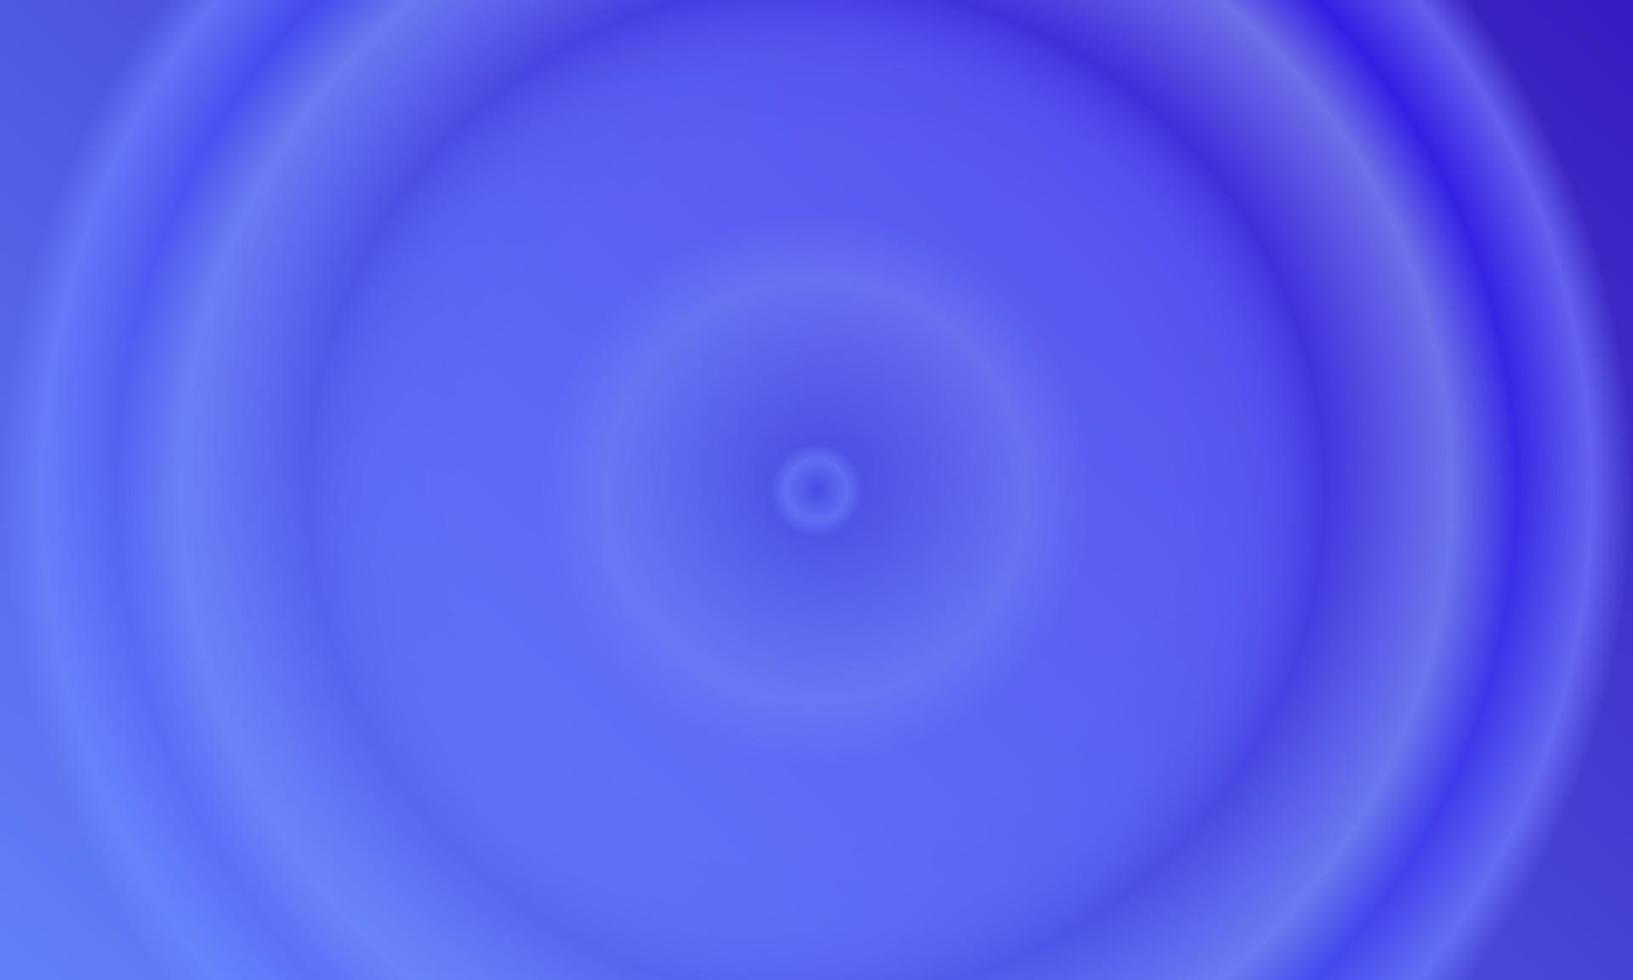 Hình nền trừu tượng gradient vòng tròn màu xanh đậm và xanh: Hình nền trừu tượng với gradient vòng tròn màu xanh đậm và xanh là một trong những thiết kế nền tuyệt đẹp mà bạn không thể bỏ qua. Nổi bật với họa tiết độc đáo và sáng tạo, nó sẽ thu hút mọi người ngay từ cái nhìn đầu tiên. Nhấp vào hình ảnh để tìm hiểu thêm về hình nền trừu tượng gradient vòng tròn màu xanh này.